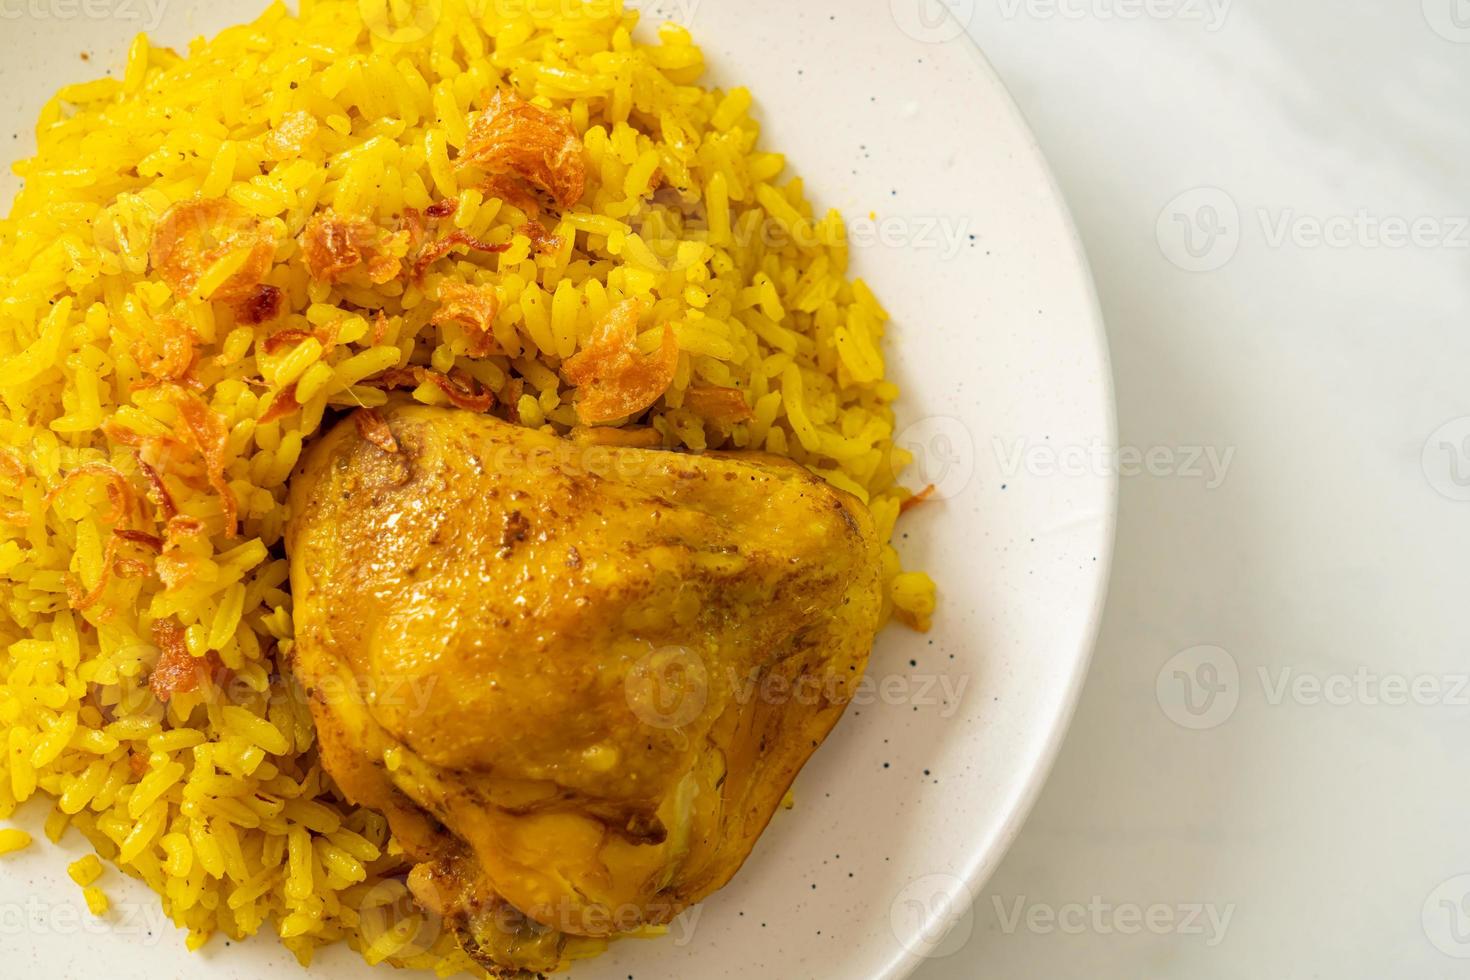 biryani di pollo o riso al curry e pollo - versione thai-musulmana del biryani indiano, con riso giallo profumato e pollo foto